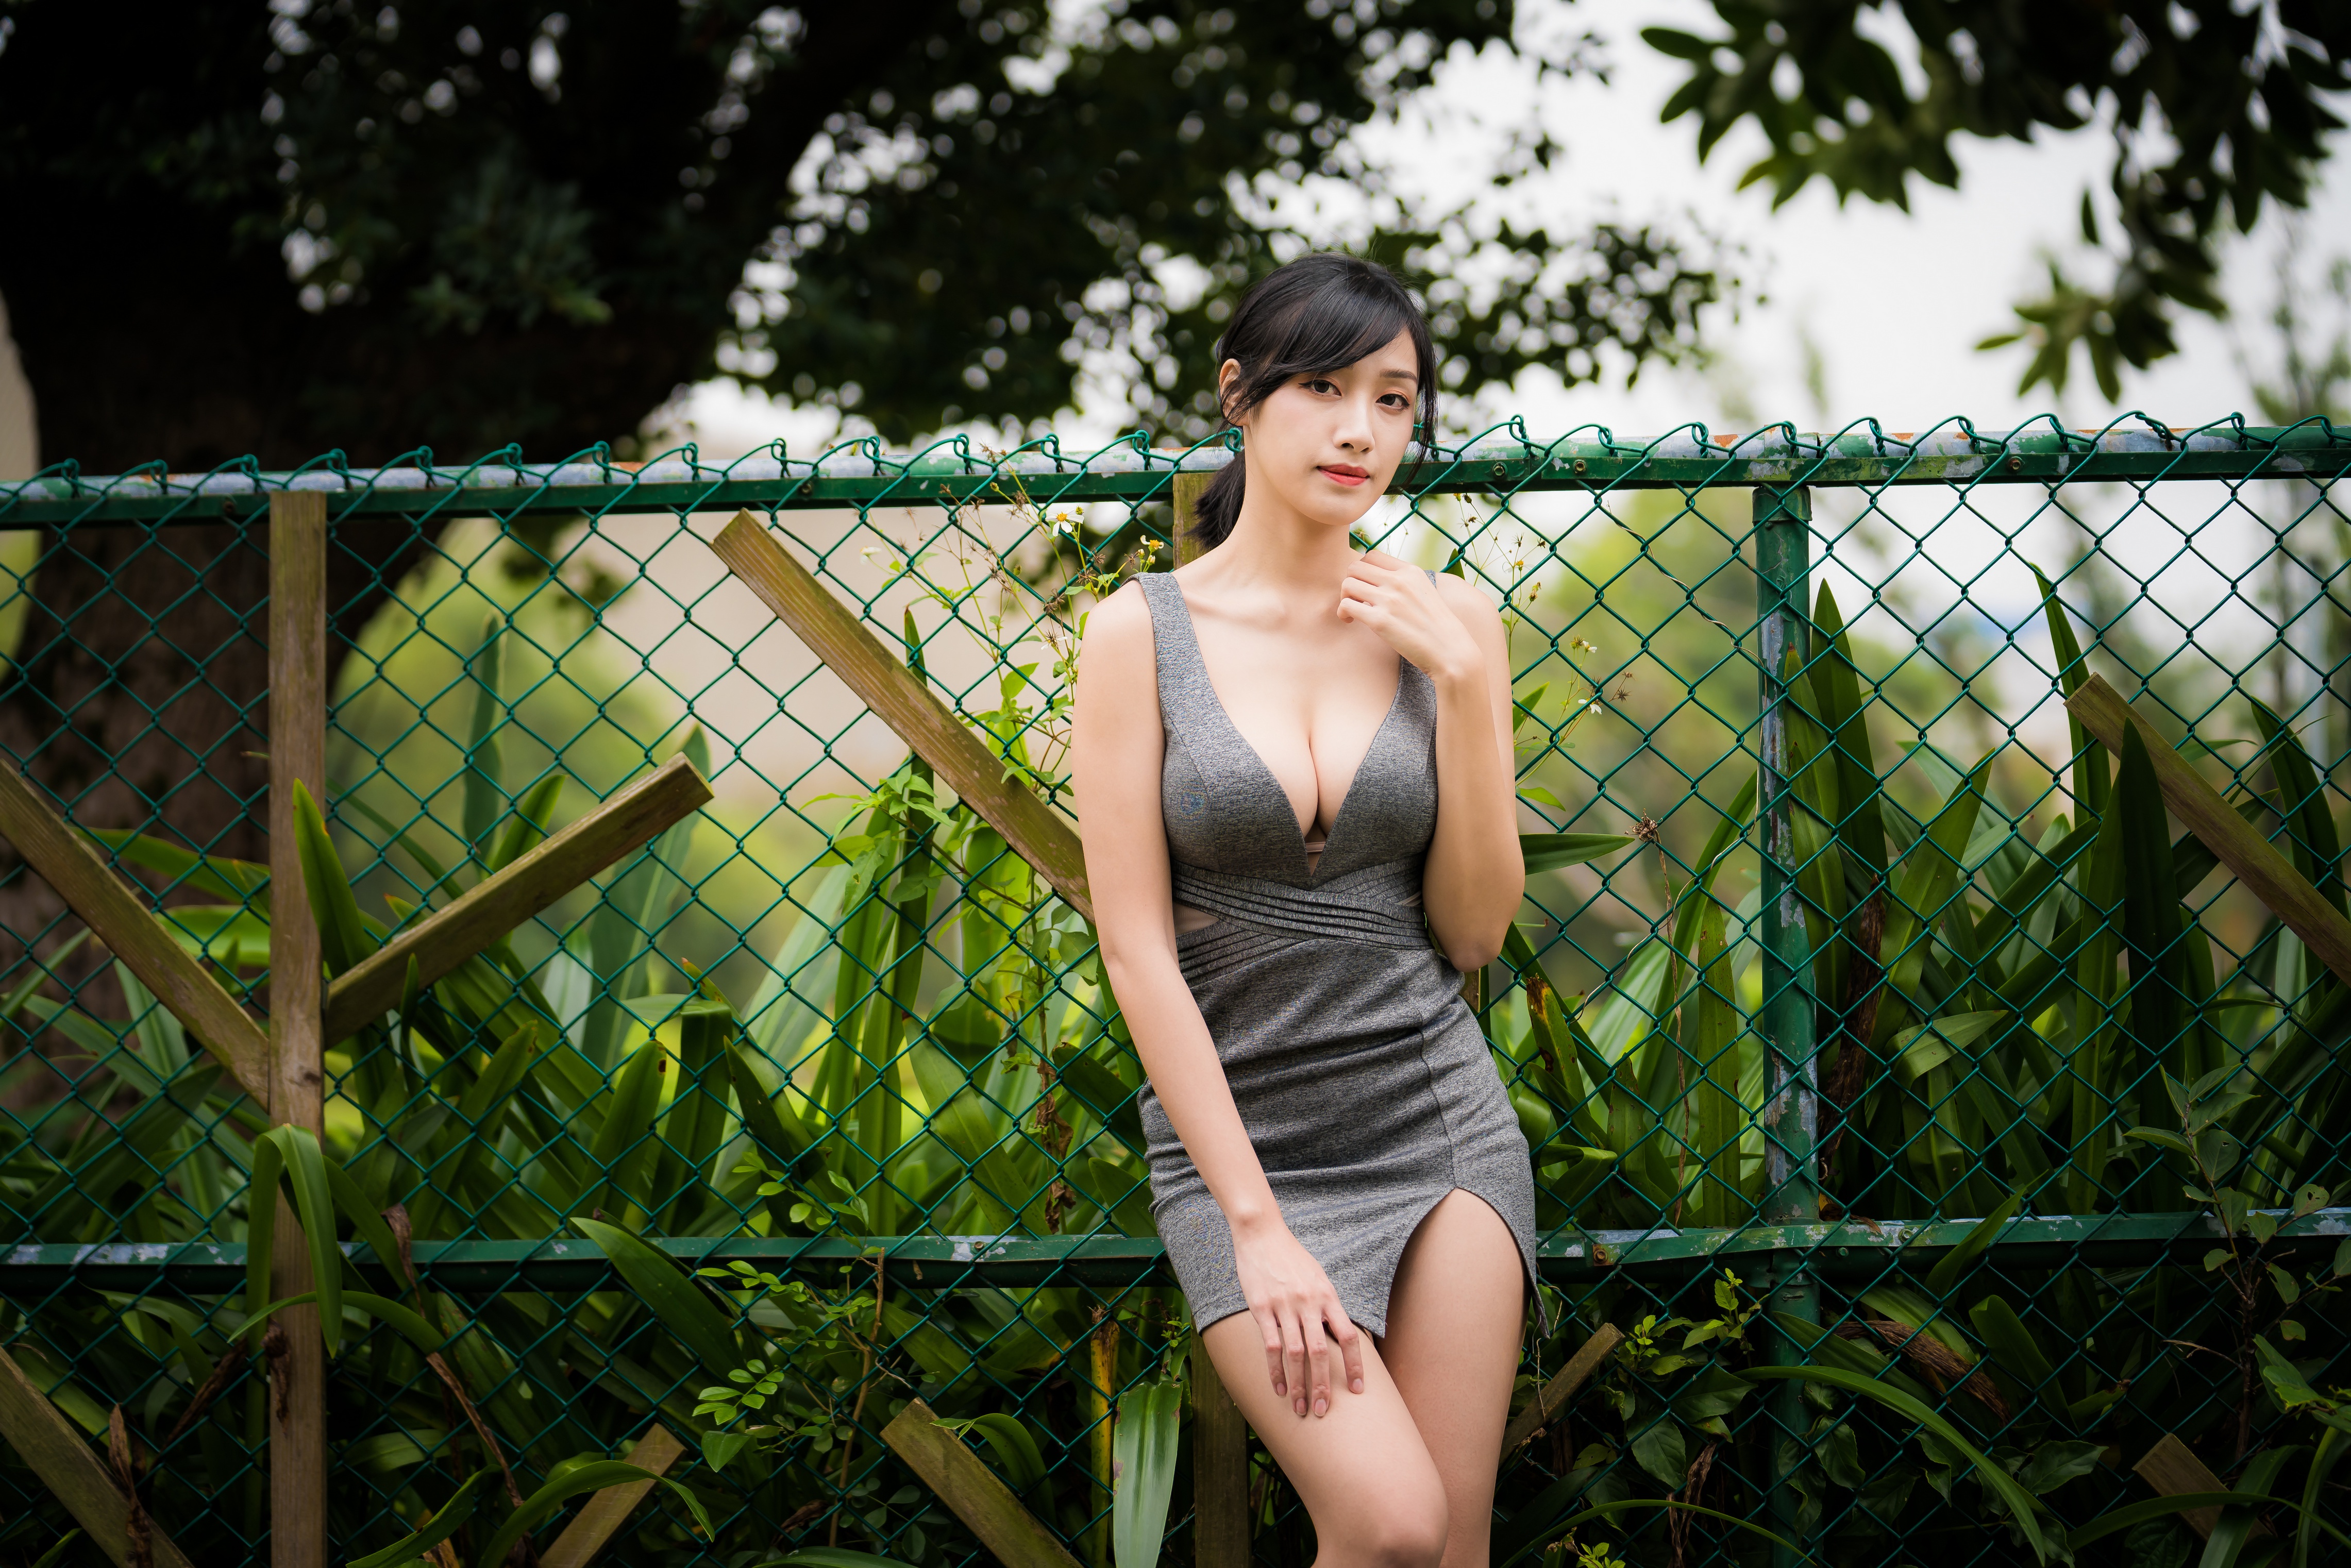 Asian Model Women Brunette Dark Eyes Legs Dress Gray Dress Bare Shoulders Looking At Viewer Portrait 4562x3043